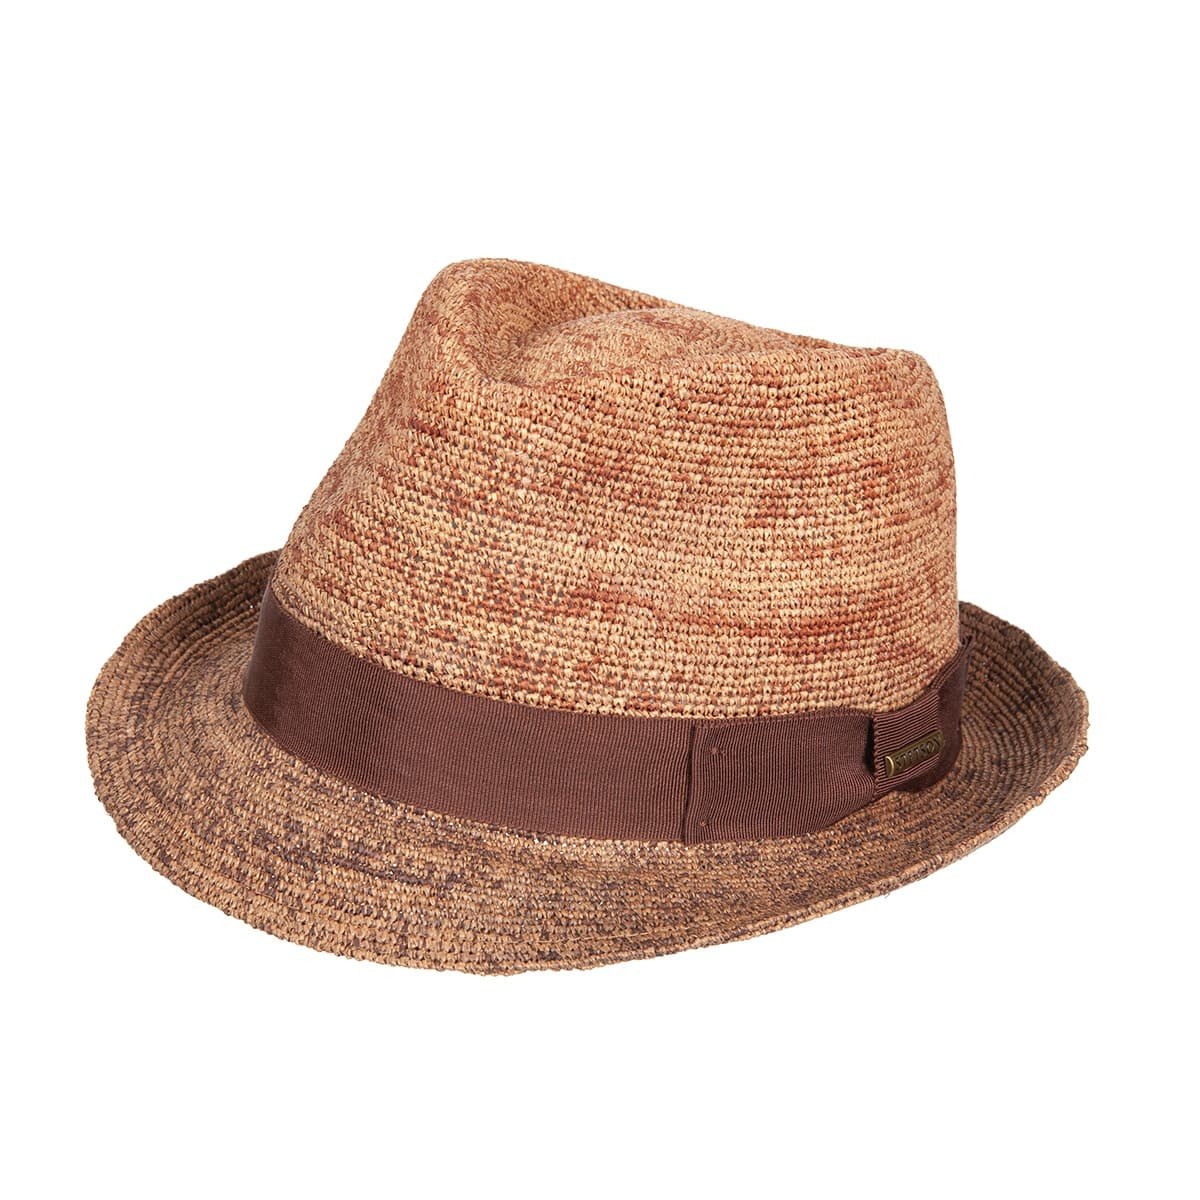 STETSON  Trilby Crochet Men's Straw Hat --> Online Hatshop for